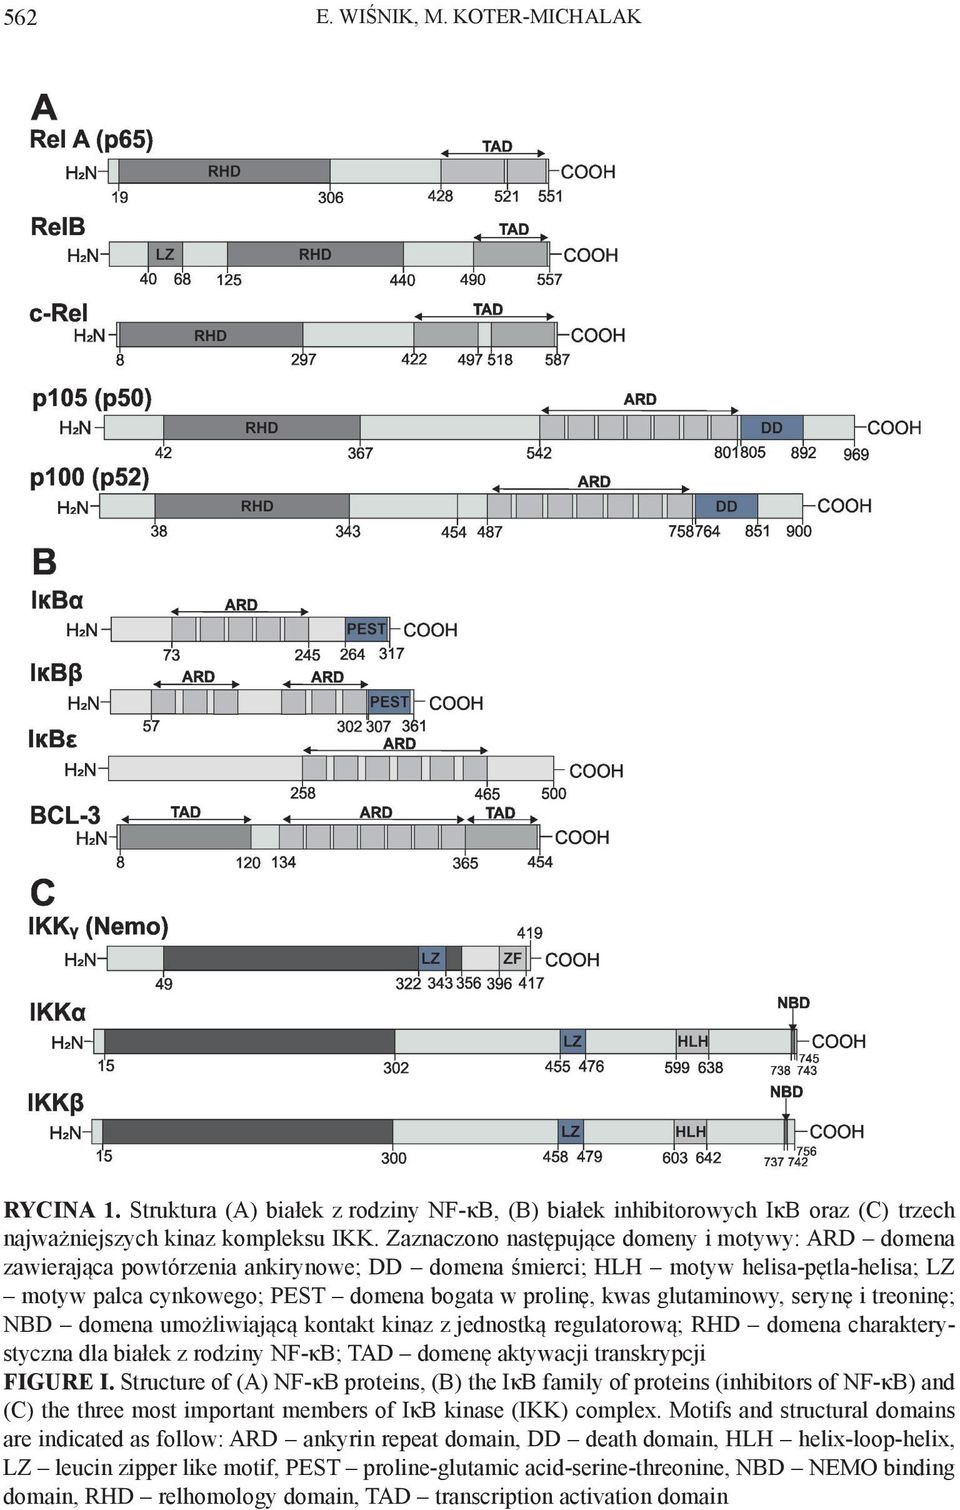 glutaminowy, serynę i treoninę; NBD domena umożliwiającą kontakt kinaz z jednostką regulatorową; RHD domena charakterystyczna dla białek z rodziny NF-κB; TAD domenę aktywacji transkrypcji FIGURE I.